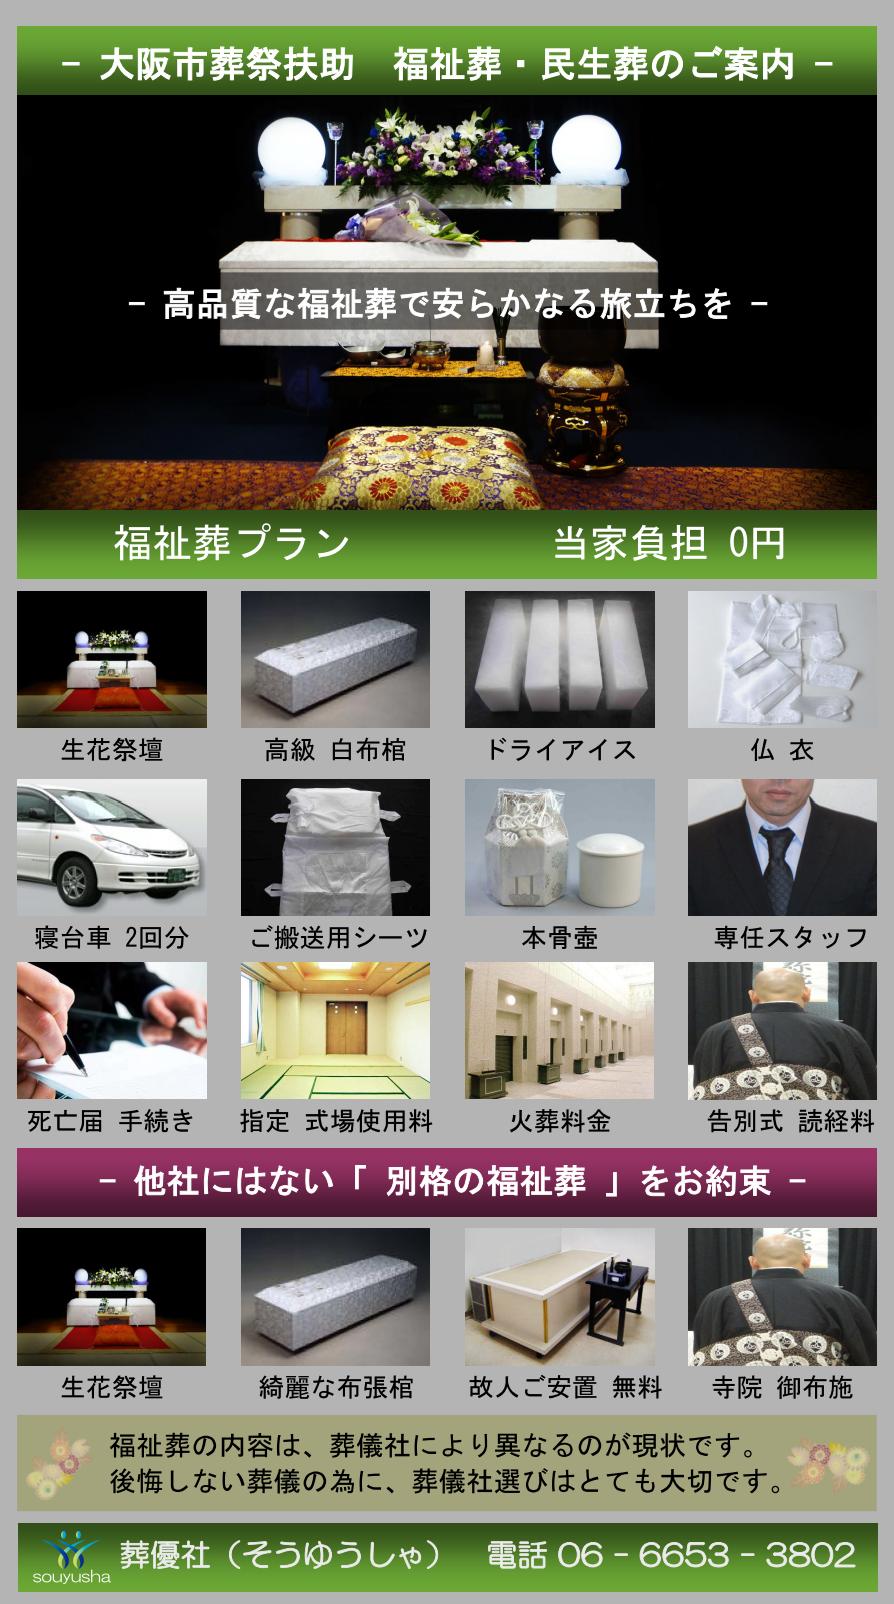 大阪市 平野区での福祉葬、生活保護者のお葬式のご案内